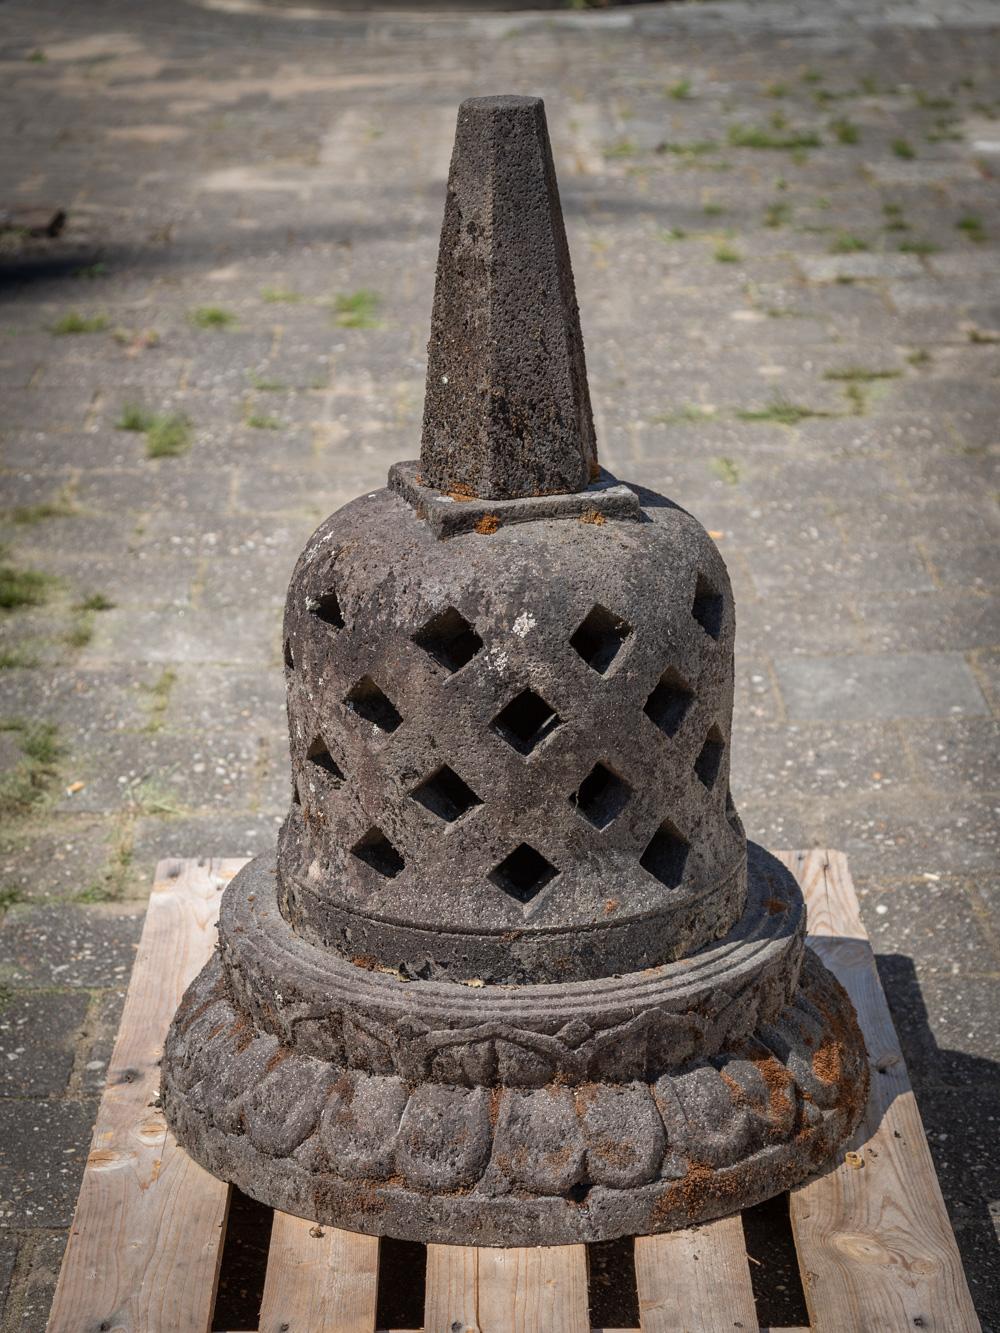 Der alte Lavastein-Stupa ist ein prächtiges und heiliges Artefakt aus Indonesien. Diese aus Lavastein gefertigte Stupa ist 99 cm hoch und hat einen Durchmesser von 70 cm. Mit einem geschätzten Gewicht von ca. 150 kg hat er eine beachtliche und